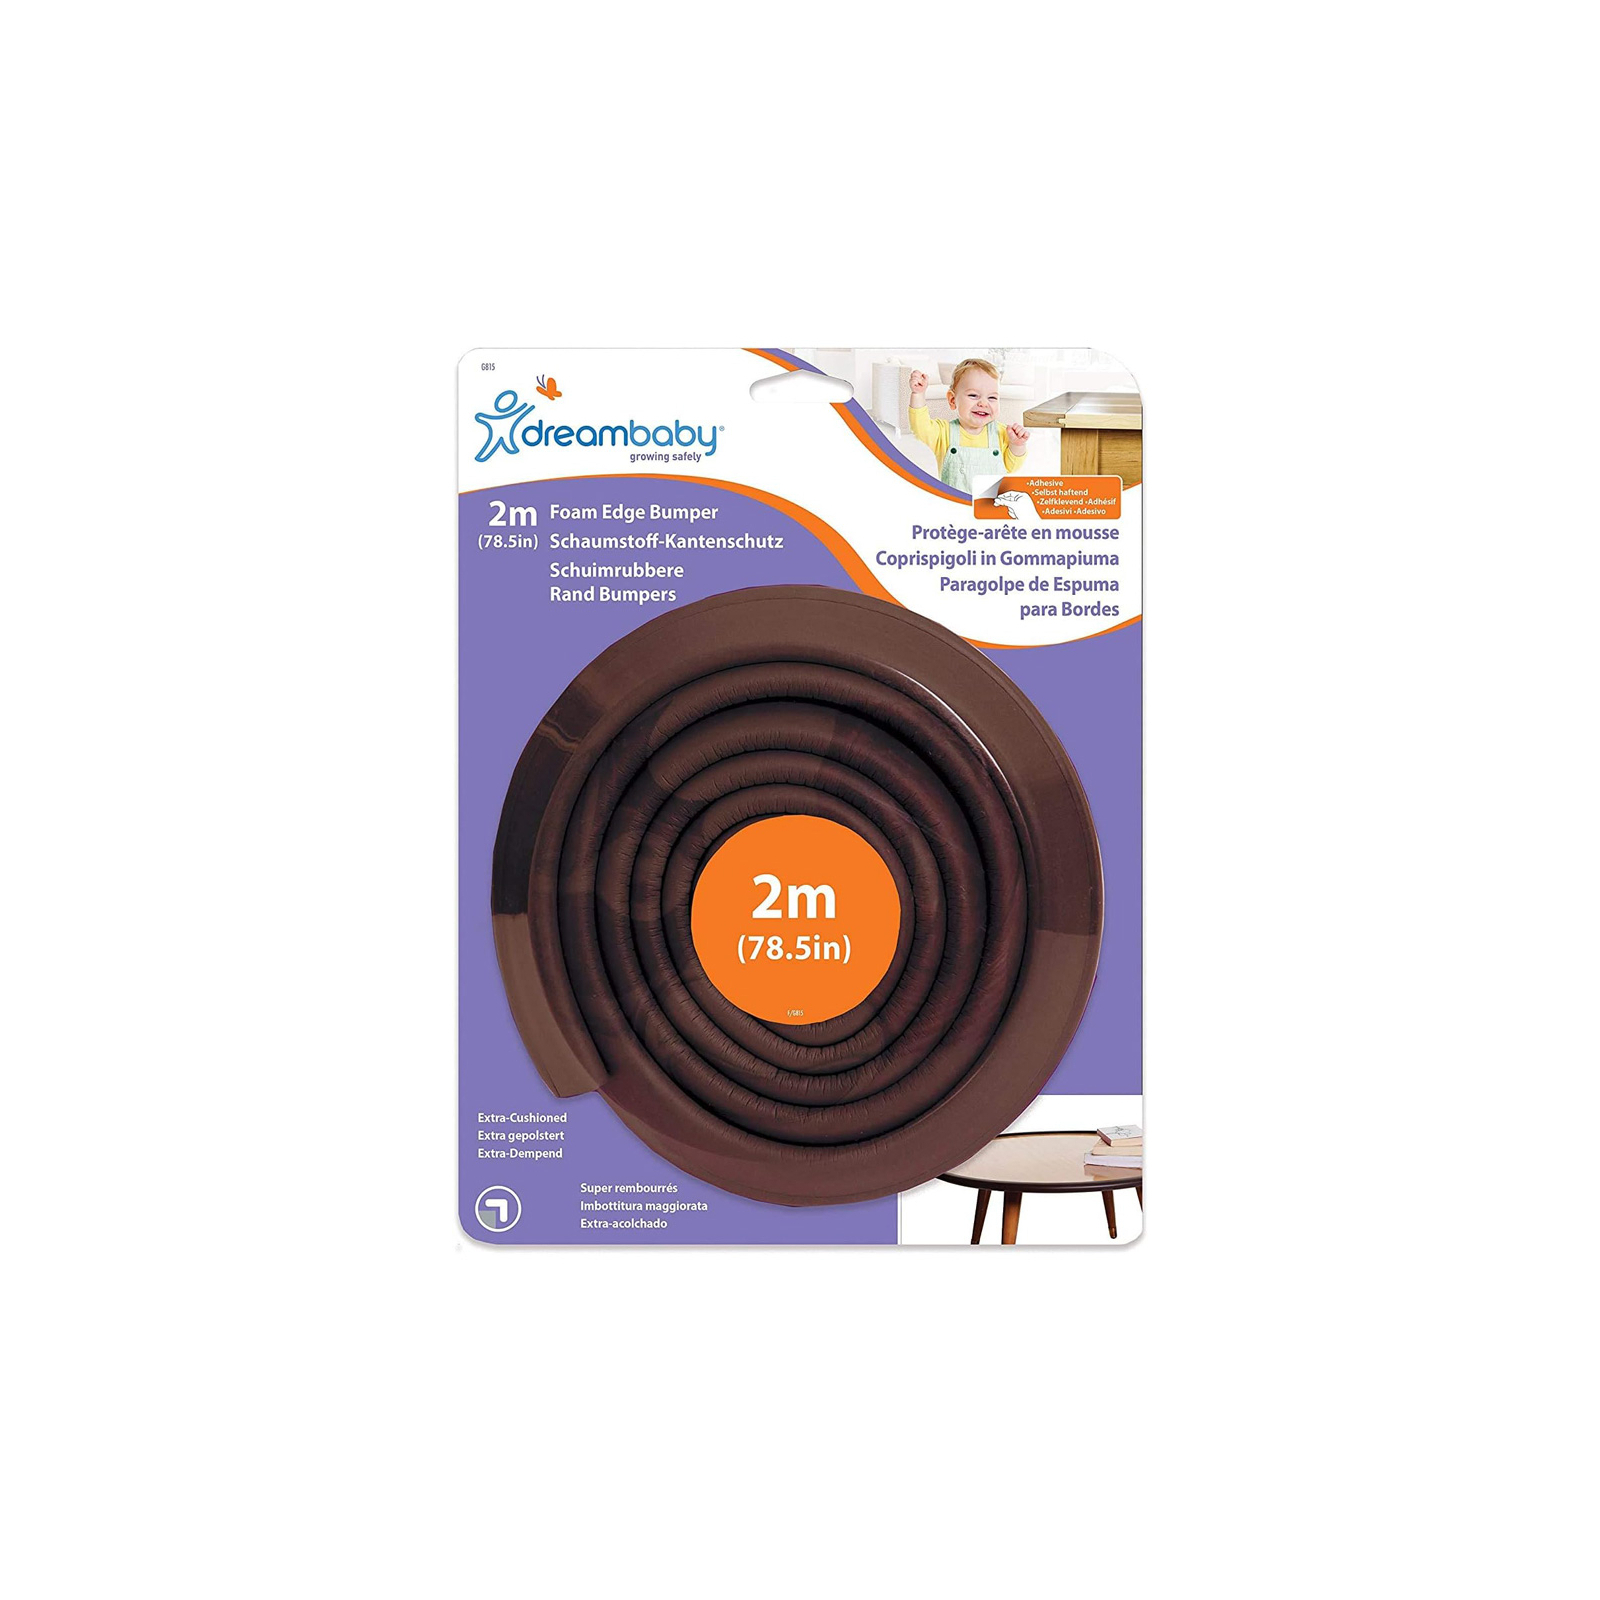 Защита на углы DreamBaby защитная лента на острые углы мебели 2 м, коричневая (G815)